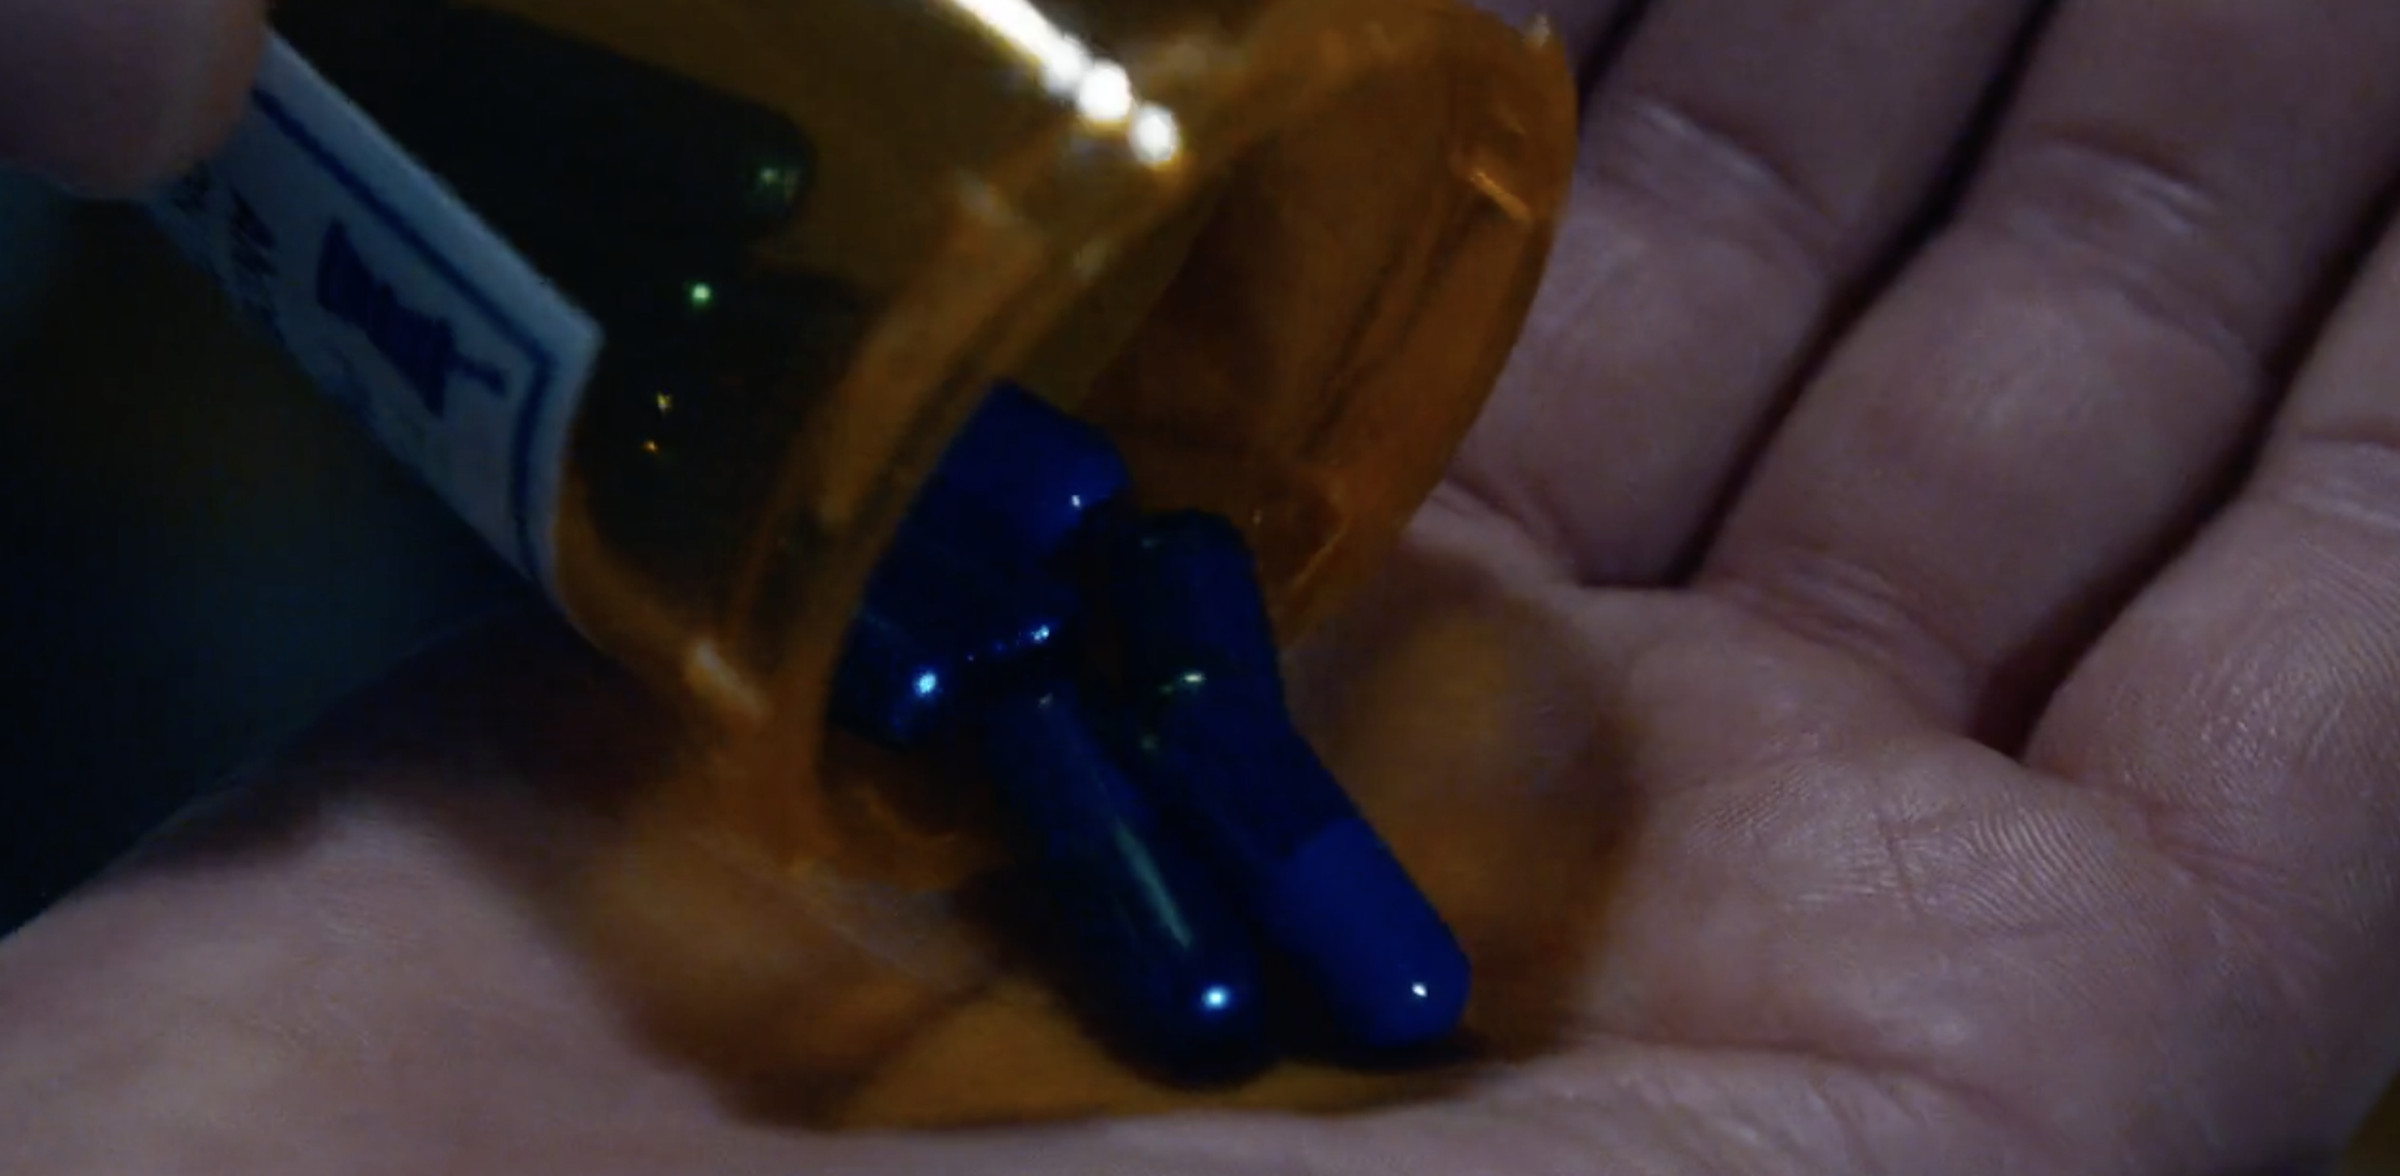 Prescription blue Matrix pills?